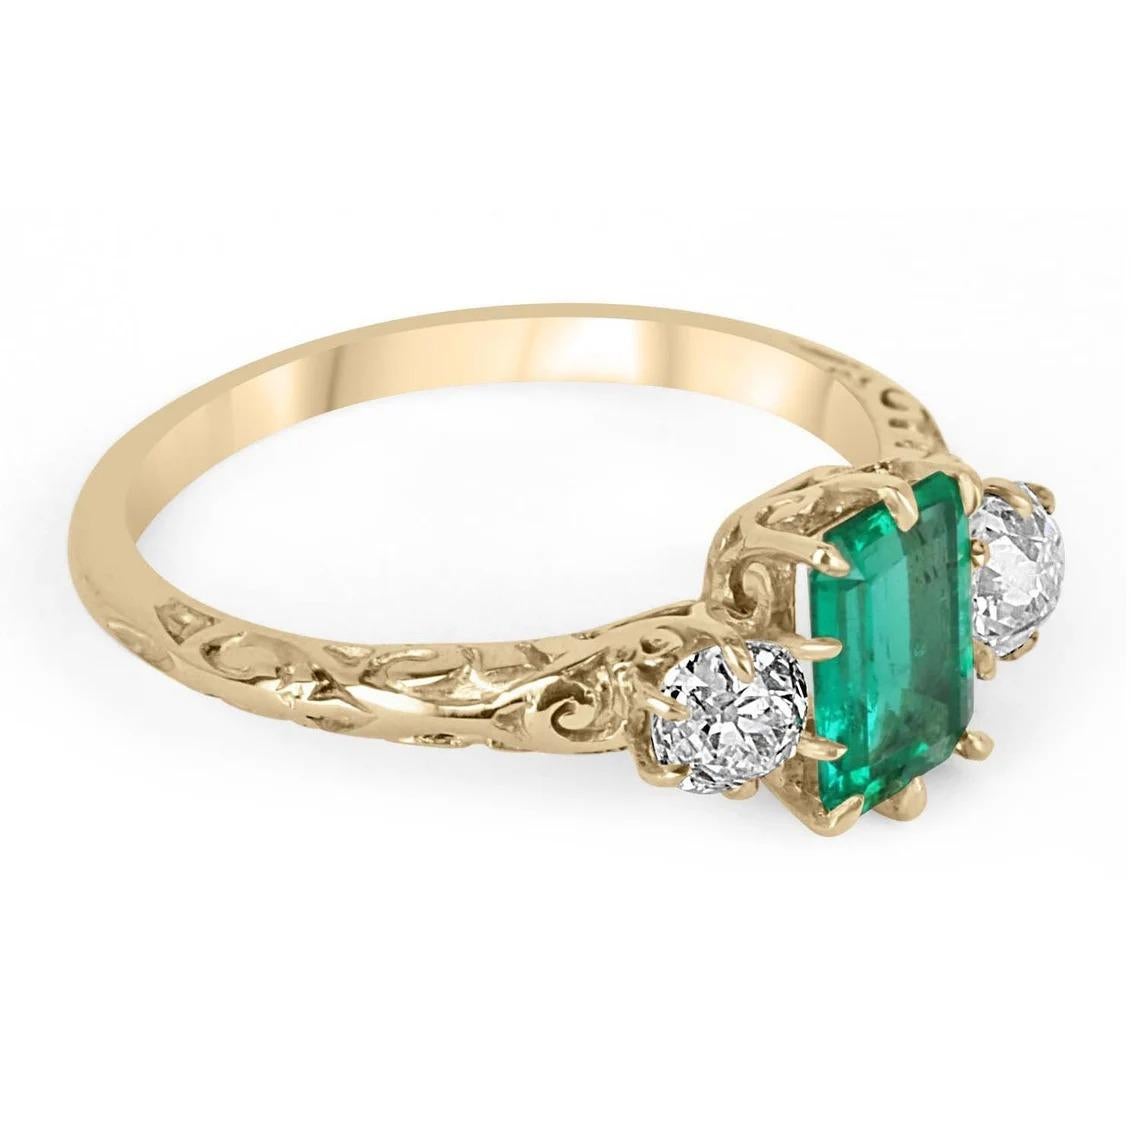 Ein seltener Fund, ein kolumbianischer Smaragd und ein alter europäischer Diamant mit drei Steinen. Ein außergewöhnlicher, viktorianisch inspirierter Ring. Dieser Ring ist aus glänzendem 18-karätigem Gelbgold gefertigt und enthält einen